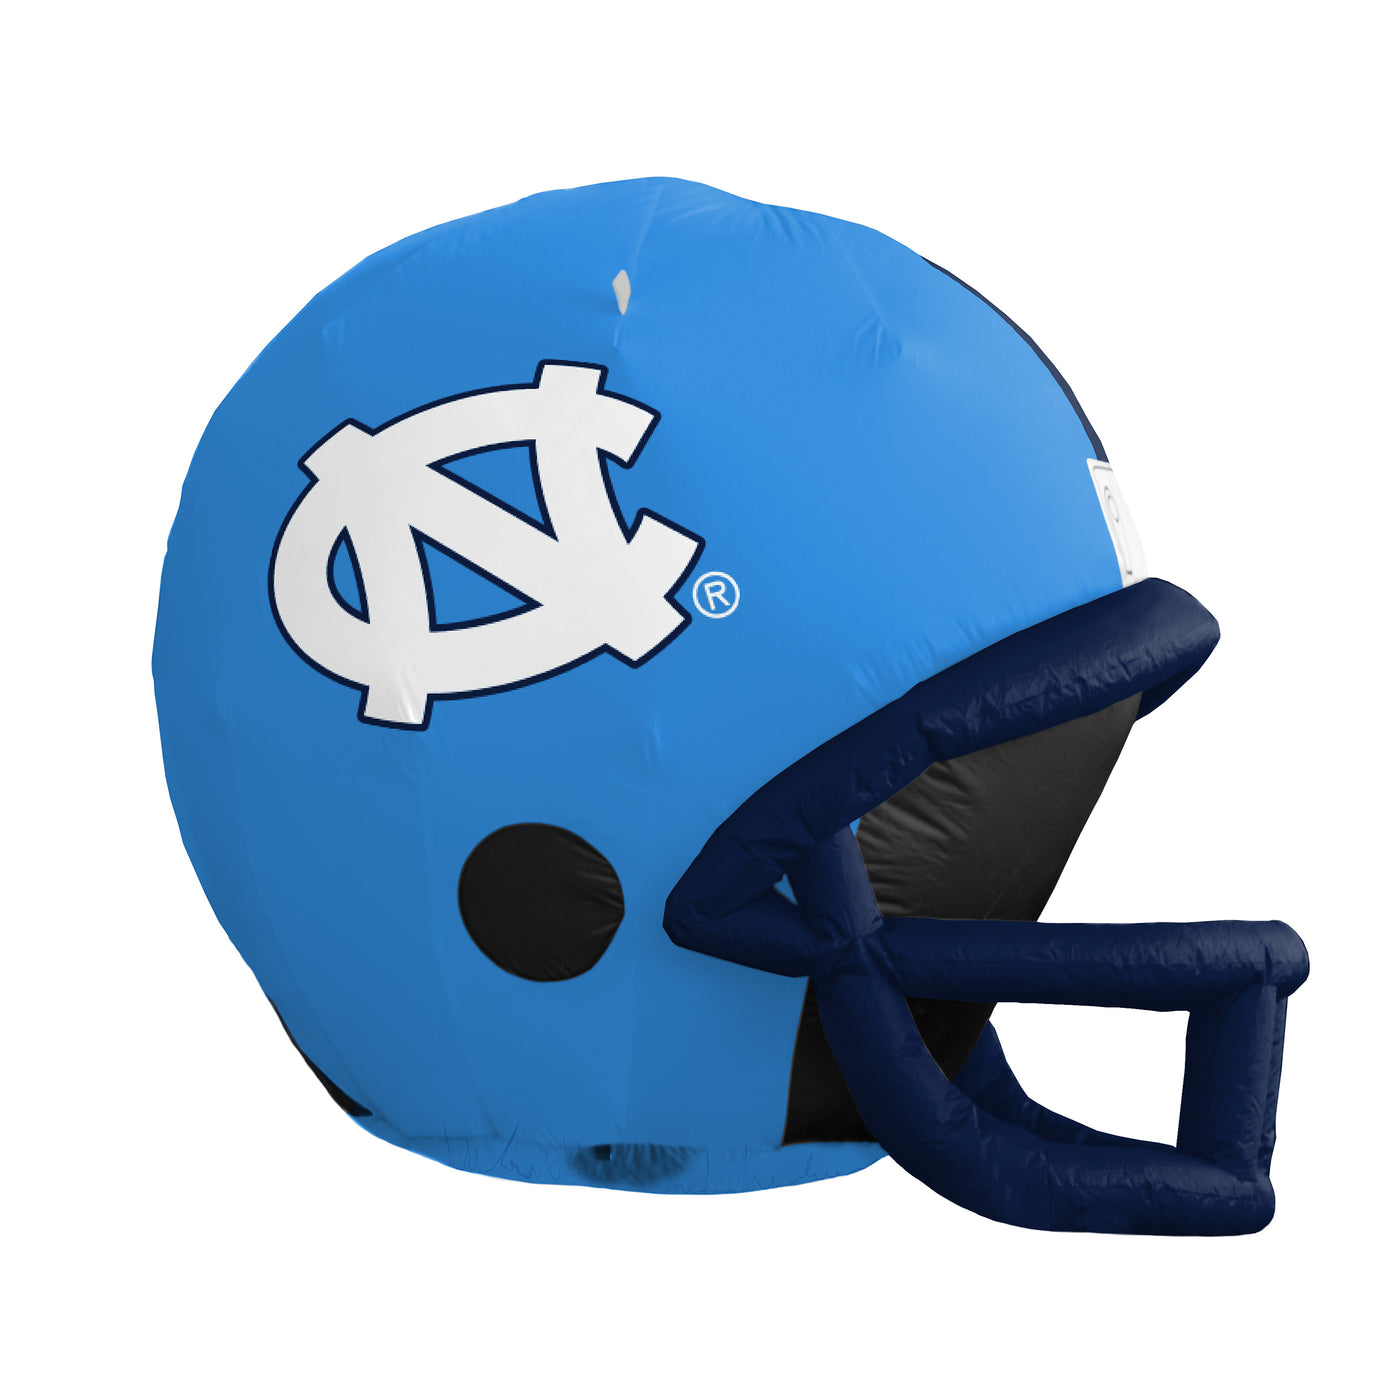 North Carolina 4ft Yard Inflatable Helmet